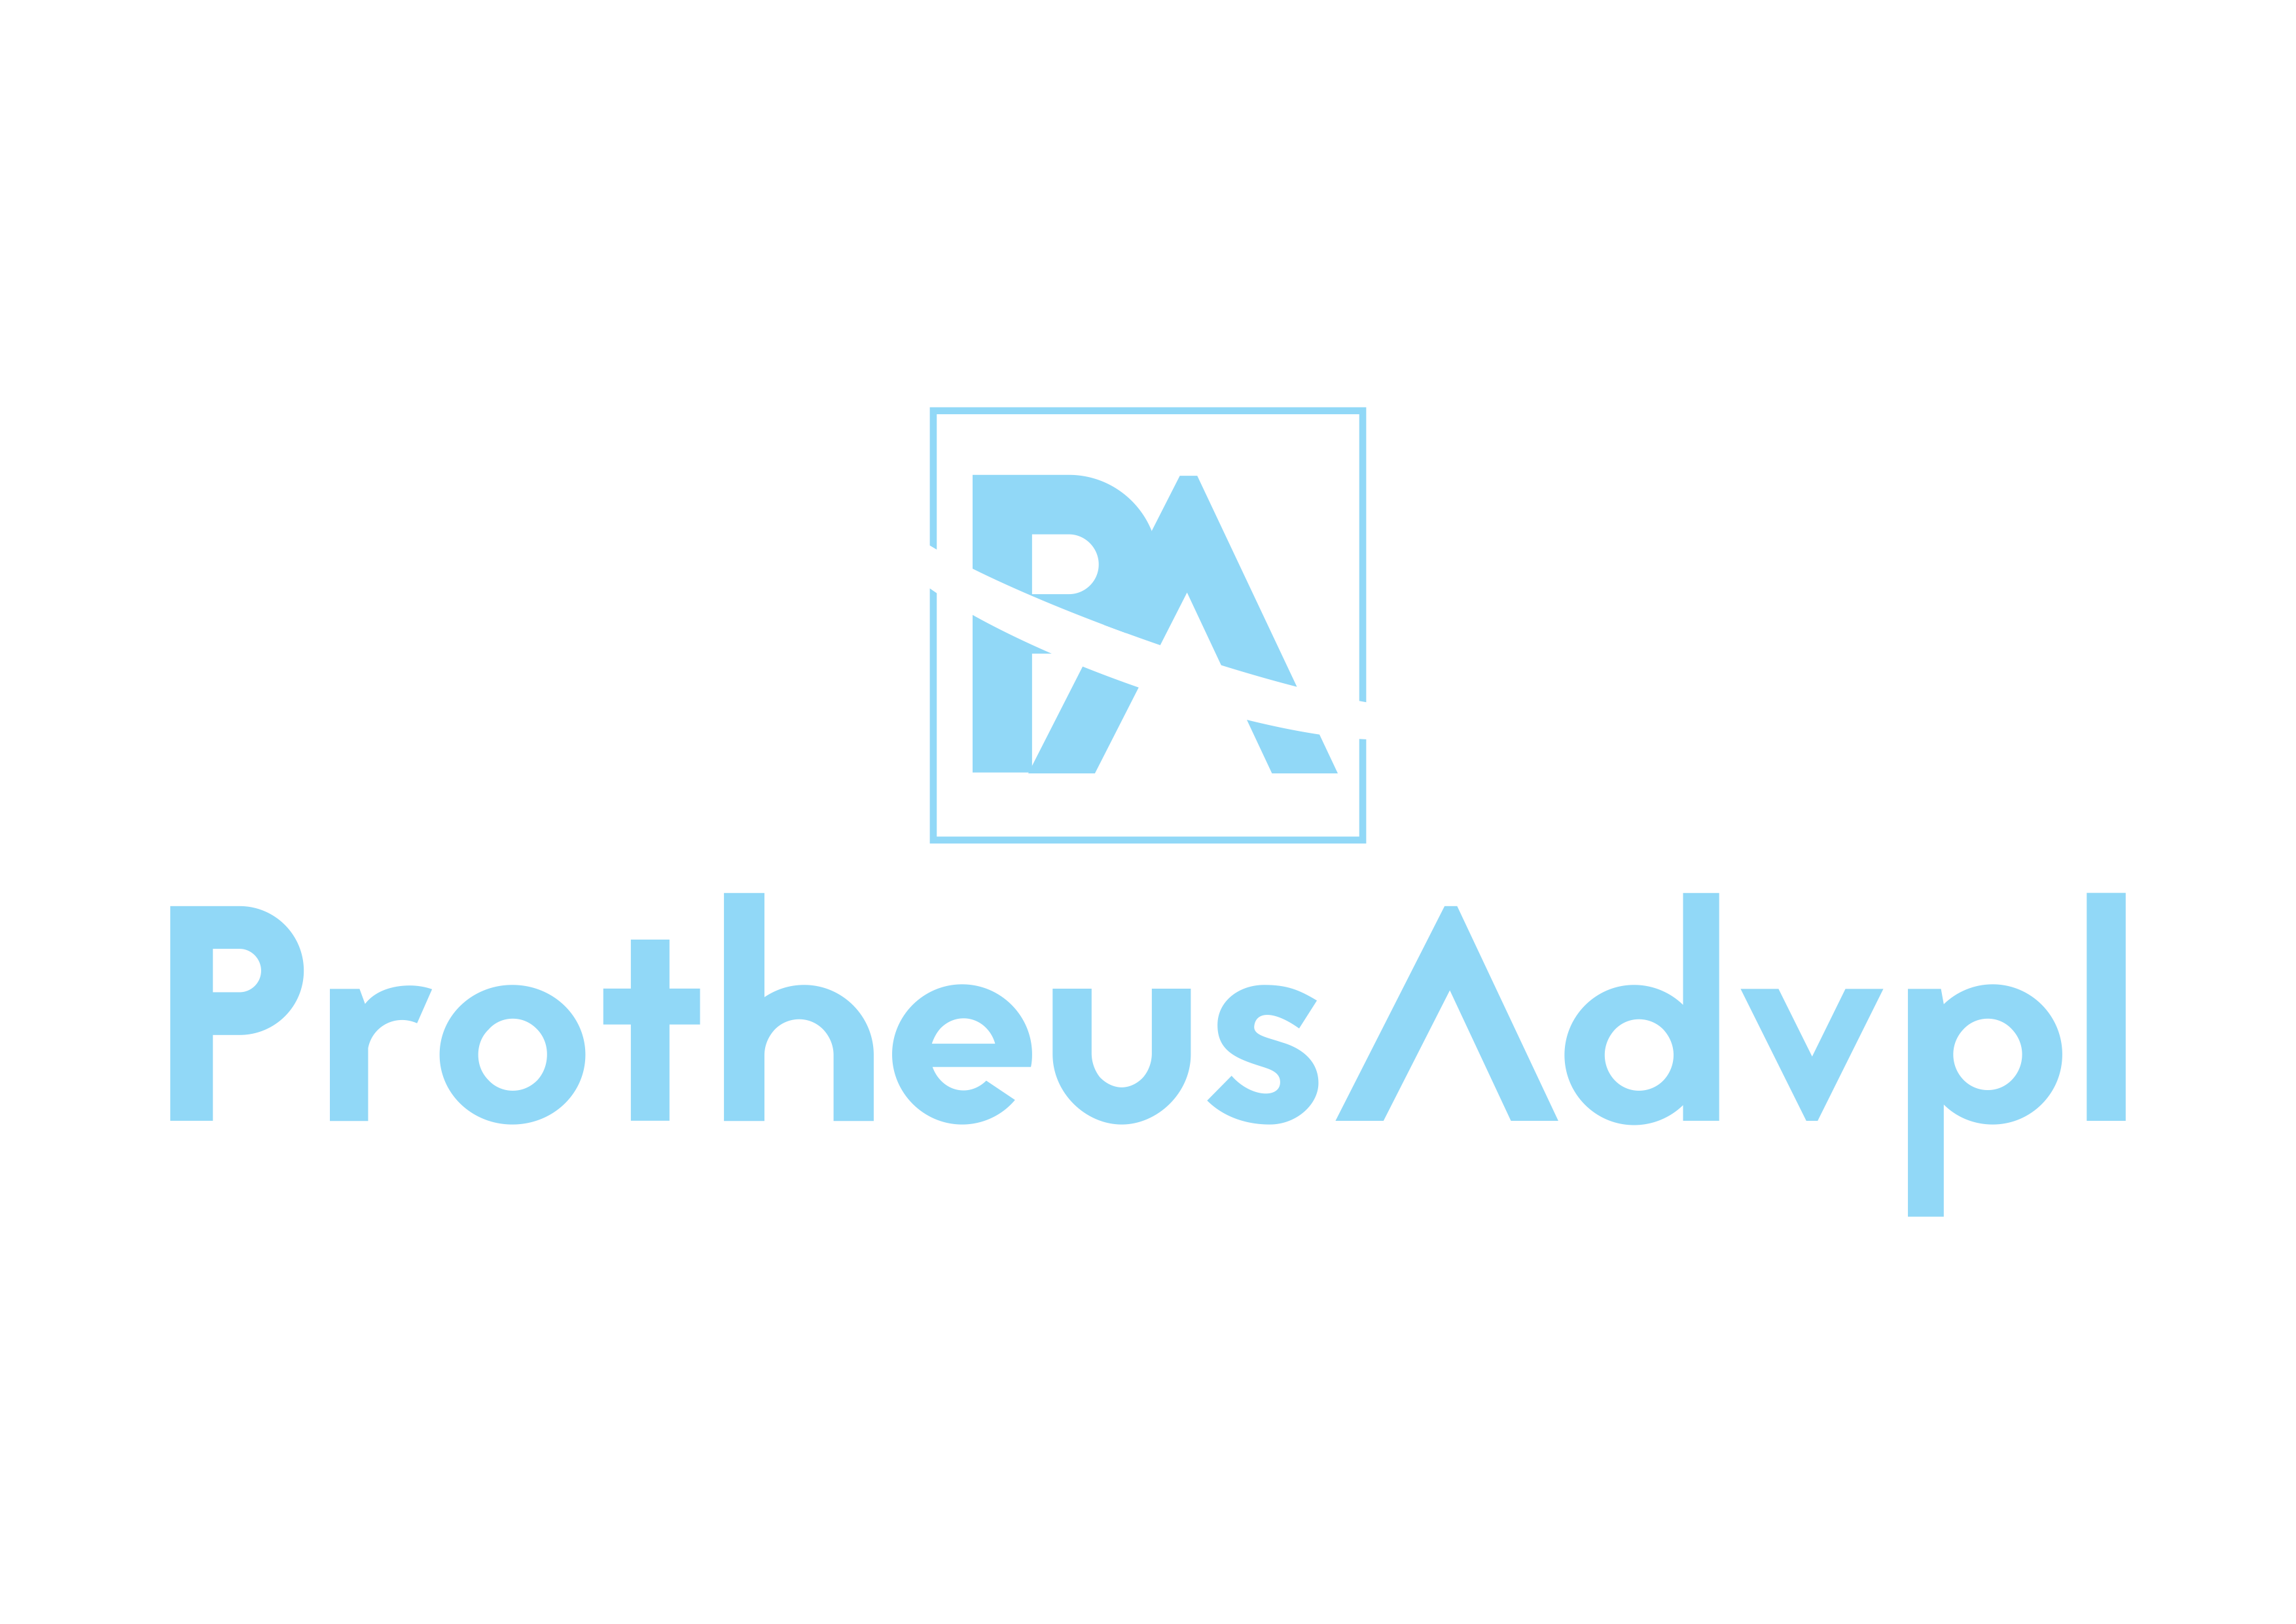 Protheus - Advpl